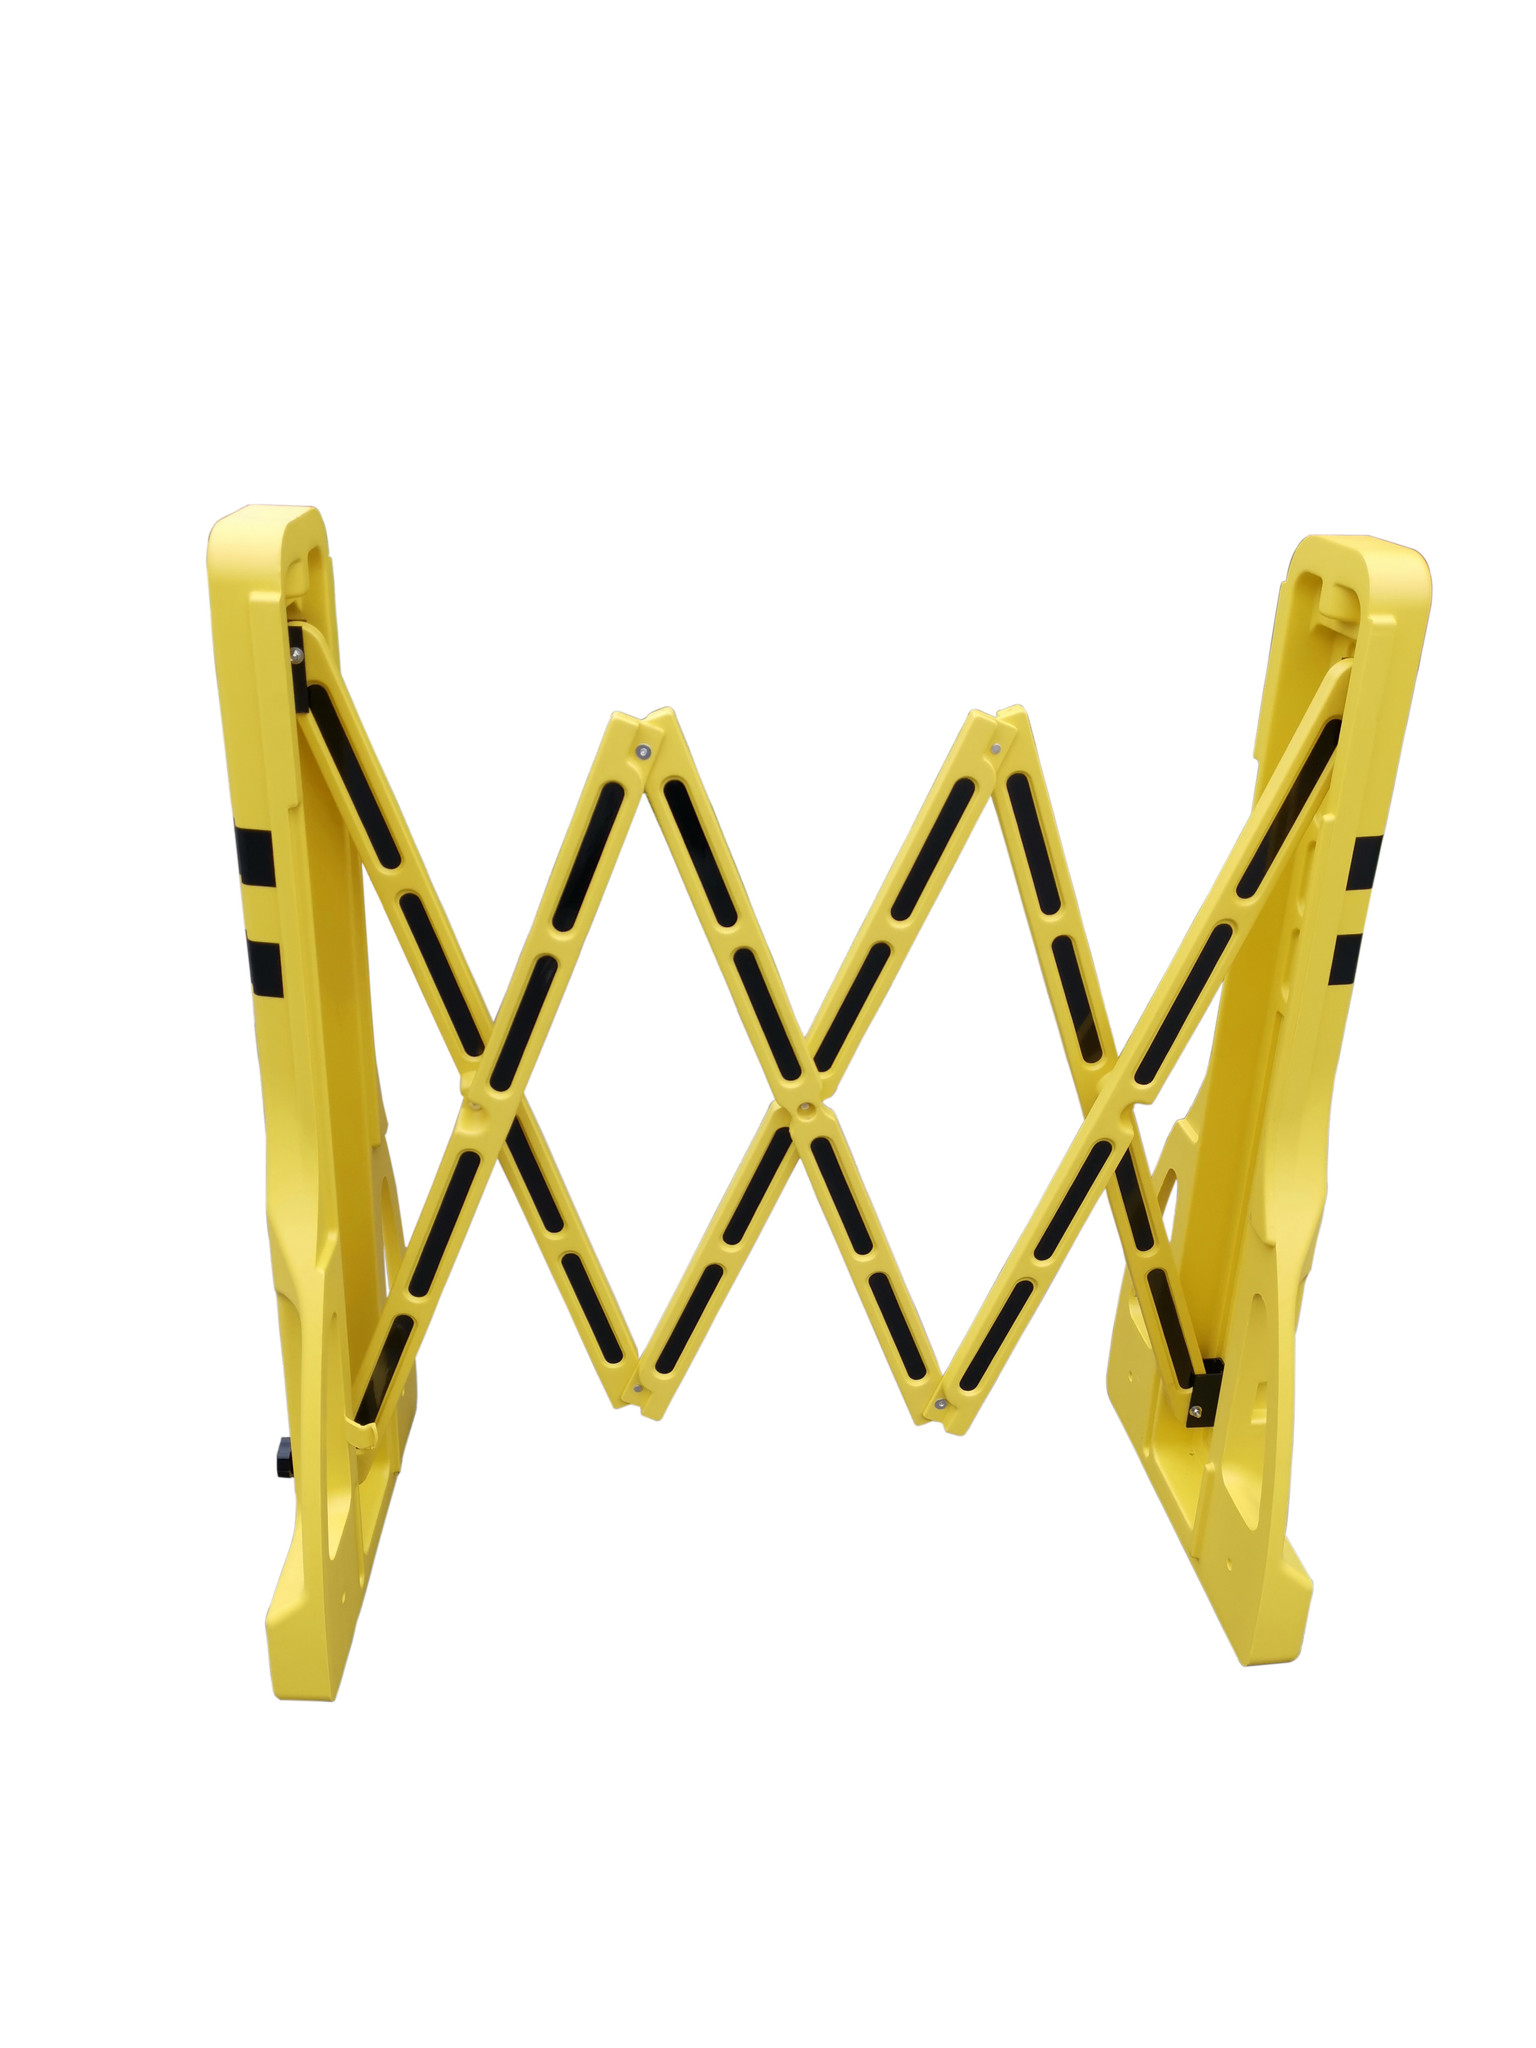 Barrière extensible PVC Extenso - jaune/noir - 2400 x 400 x 1000 mm